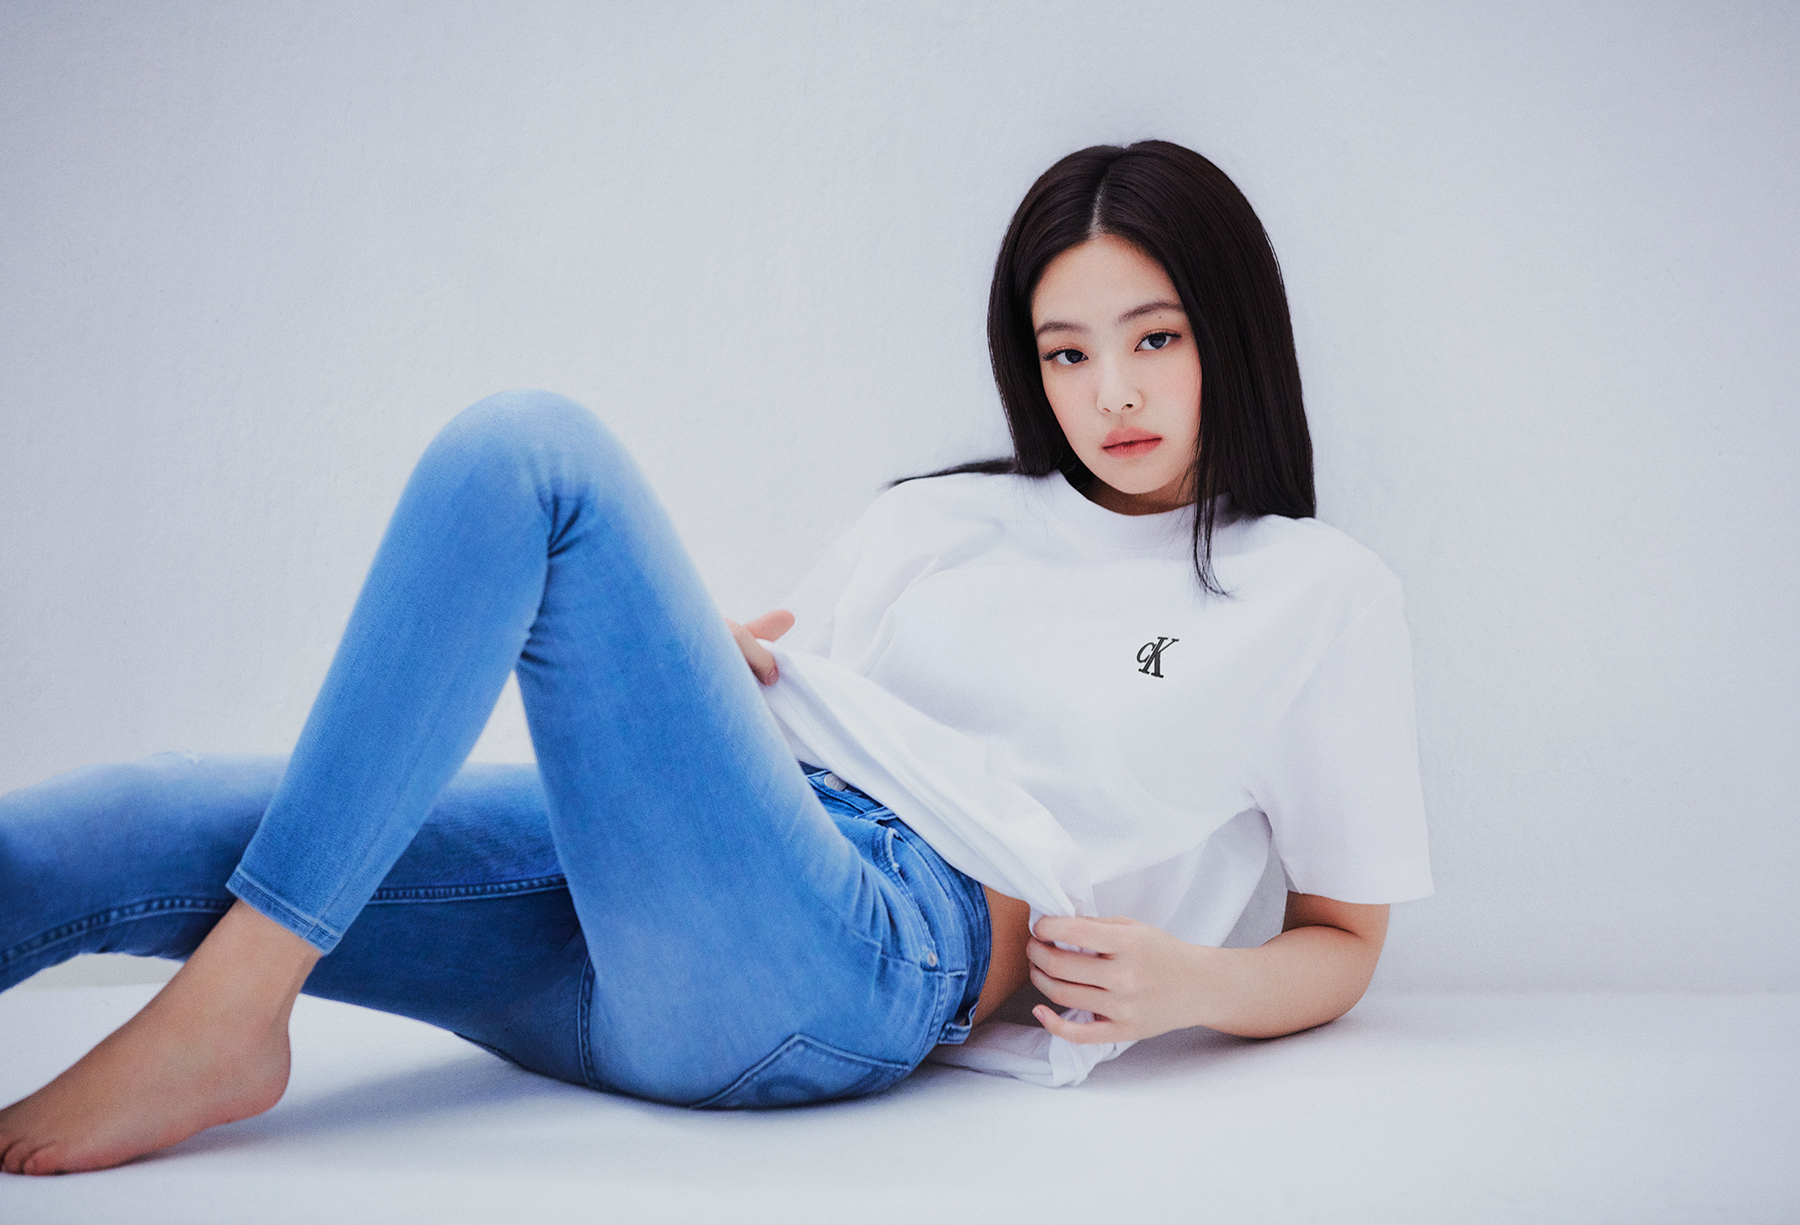 Jennie Calvin Klein Jeans 2020